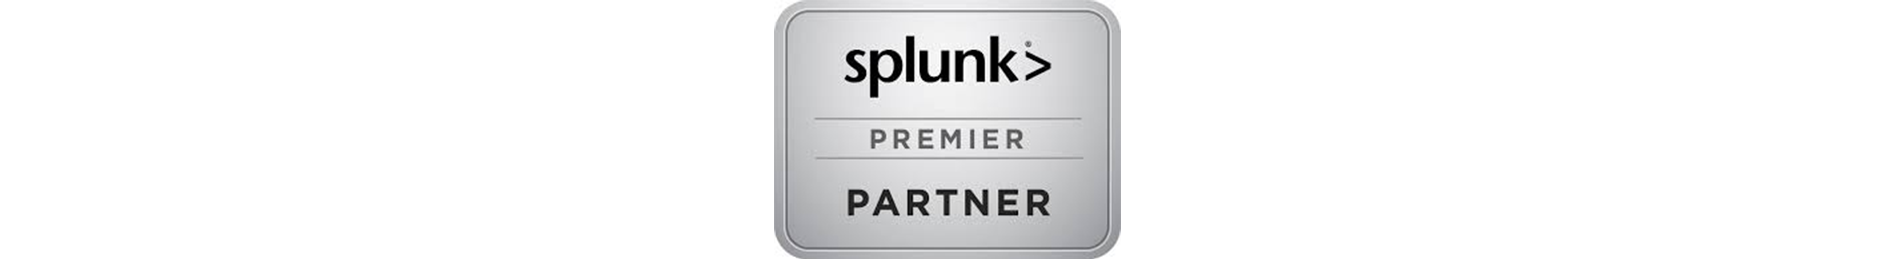 Splunk – Установка агентов для сбора логов Windows и Linux - 17